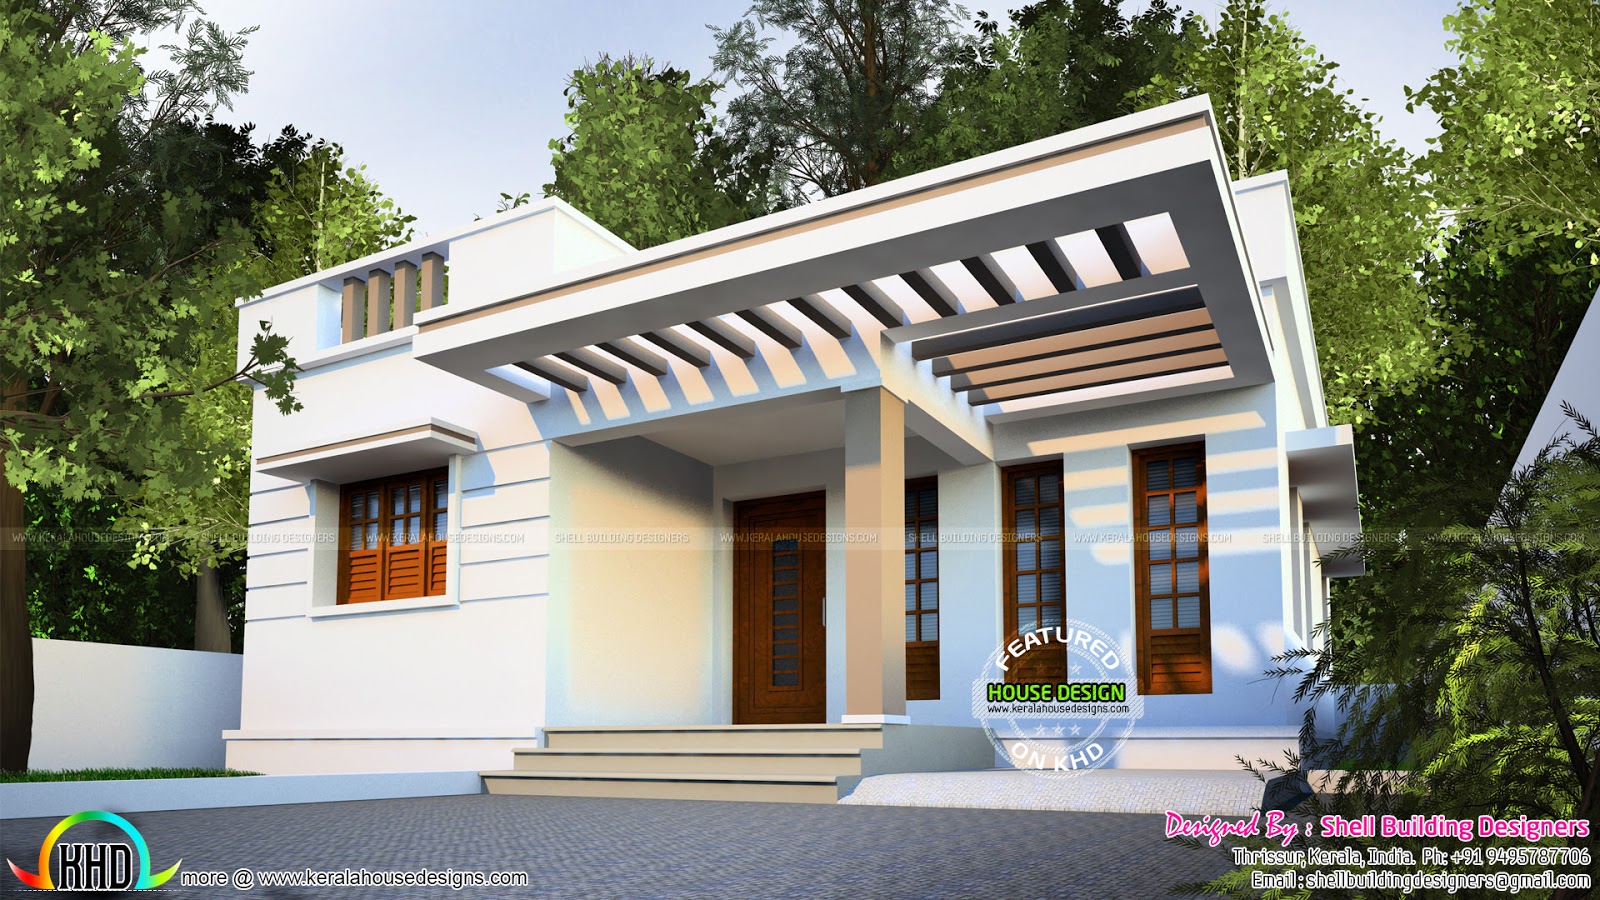  900  sq  ft  2 bedroom single floor home  Kerala home  design 